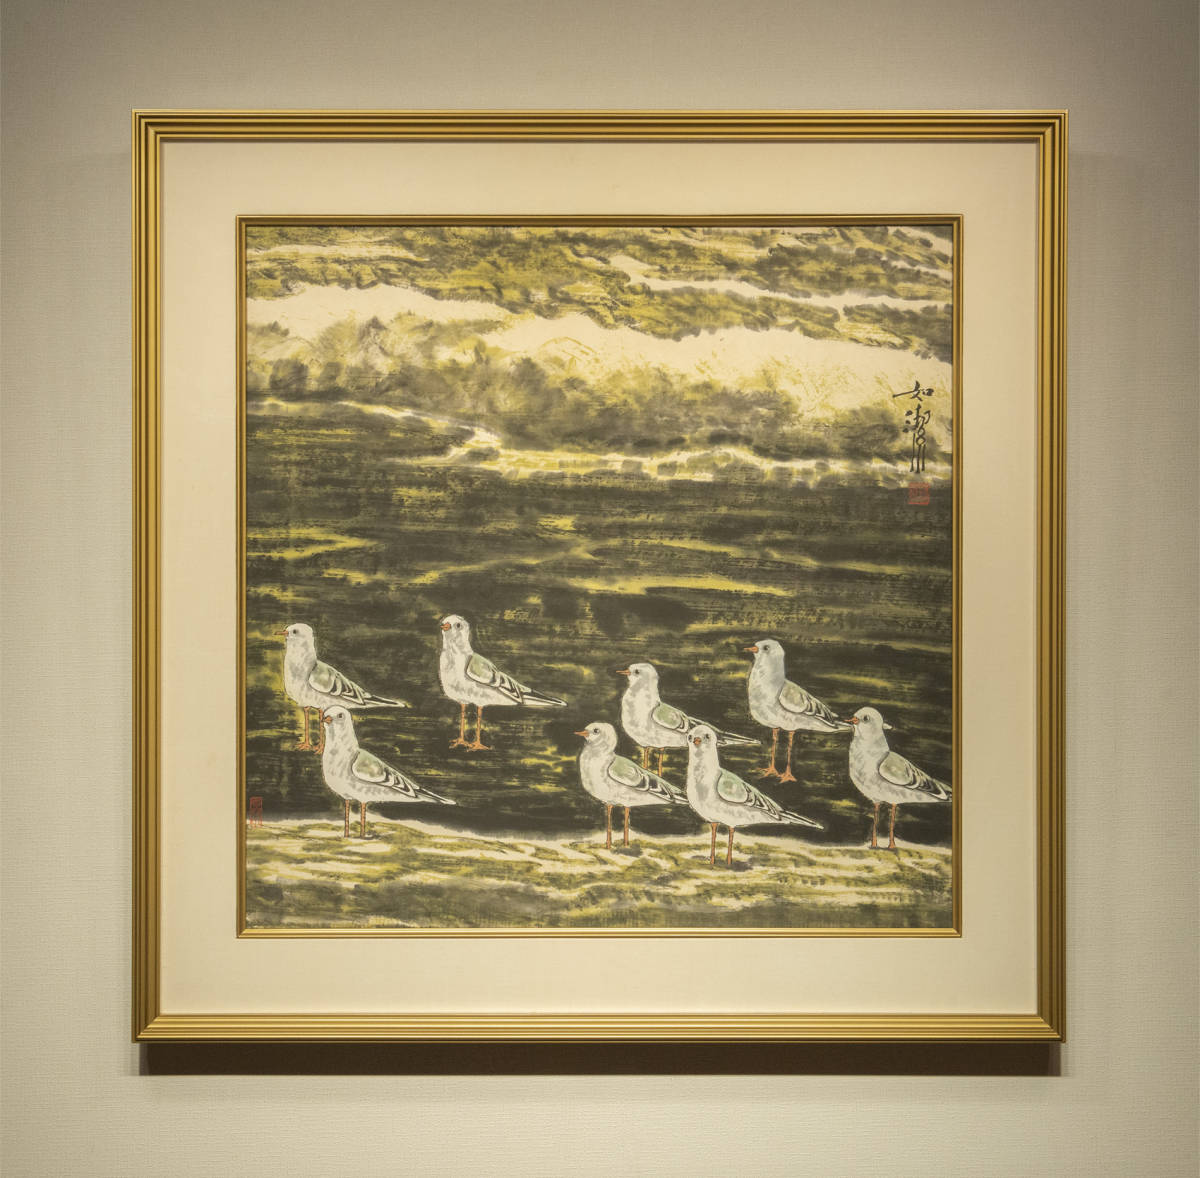 लिआंग रु'1990 के दशक की शुरुआत में समुद्र' फ़्रेमयुक्त प्रामाणिक गारंटीकृत चीनी पेंटिंग समकालीन कला, कलाकृति, चित्रकारी, अन्य